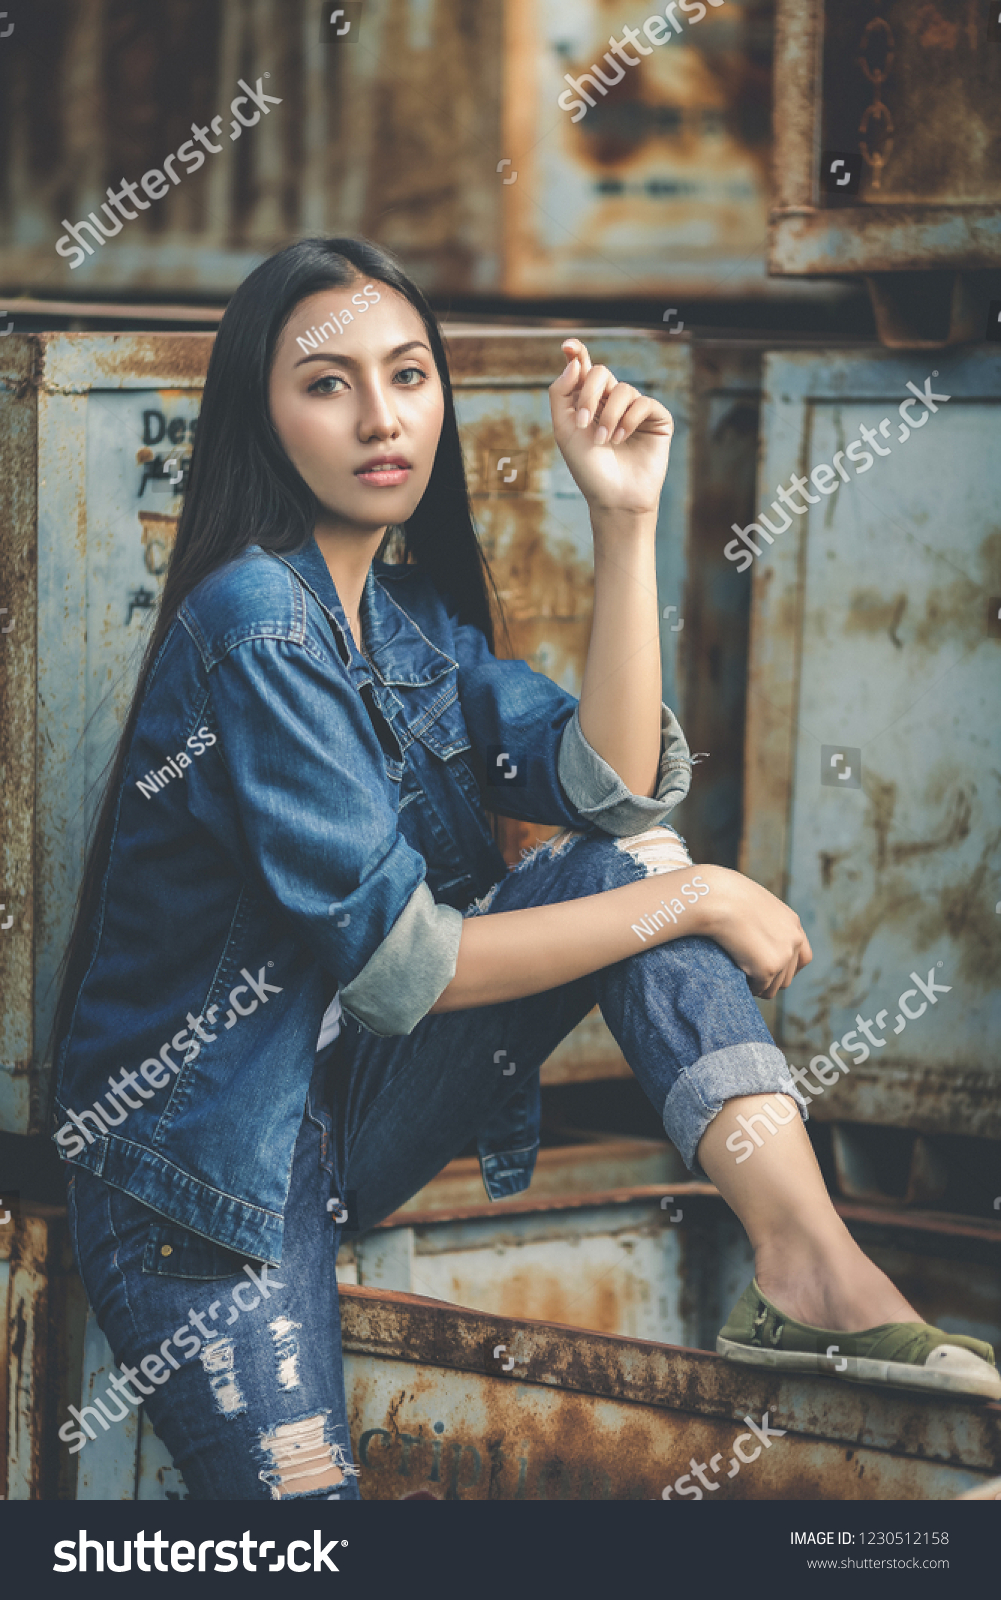 Teenage Girls Wearing Jeans Stock Photo 1230512158 | Shutterstock